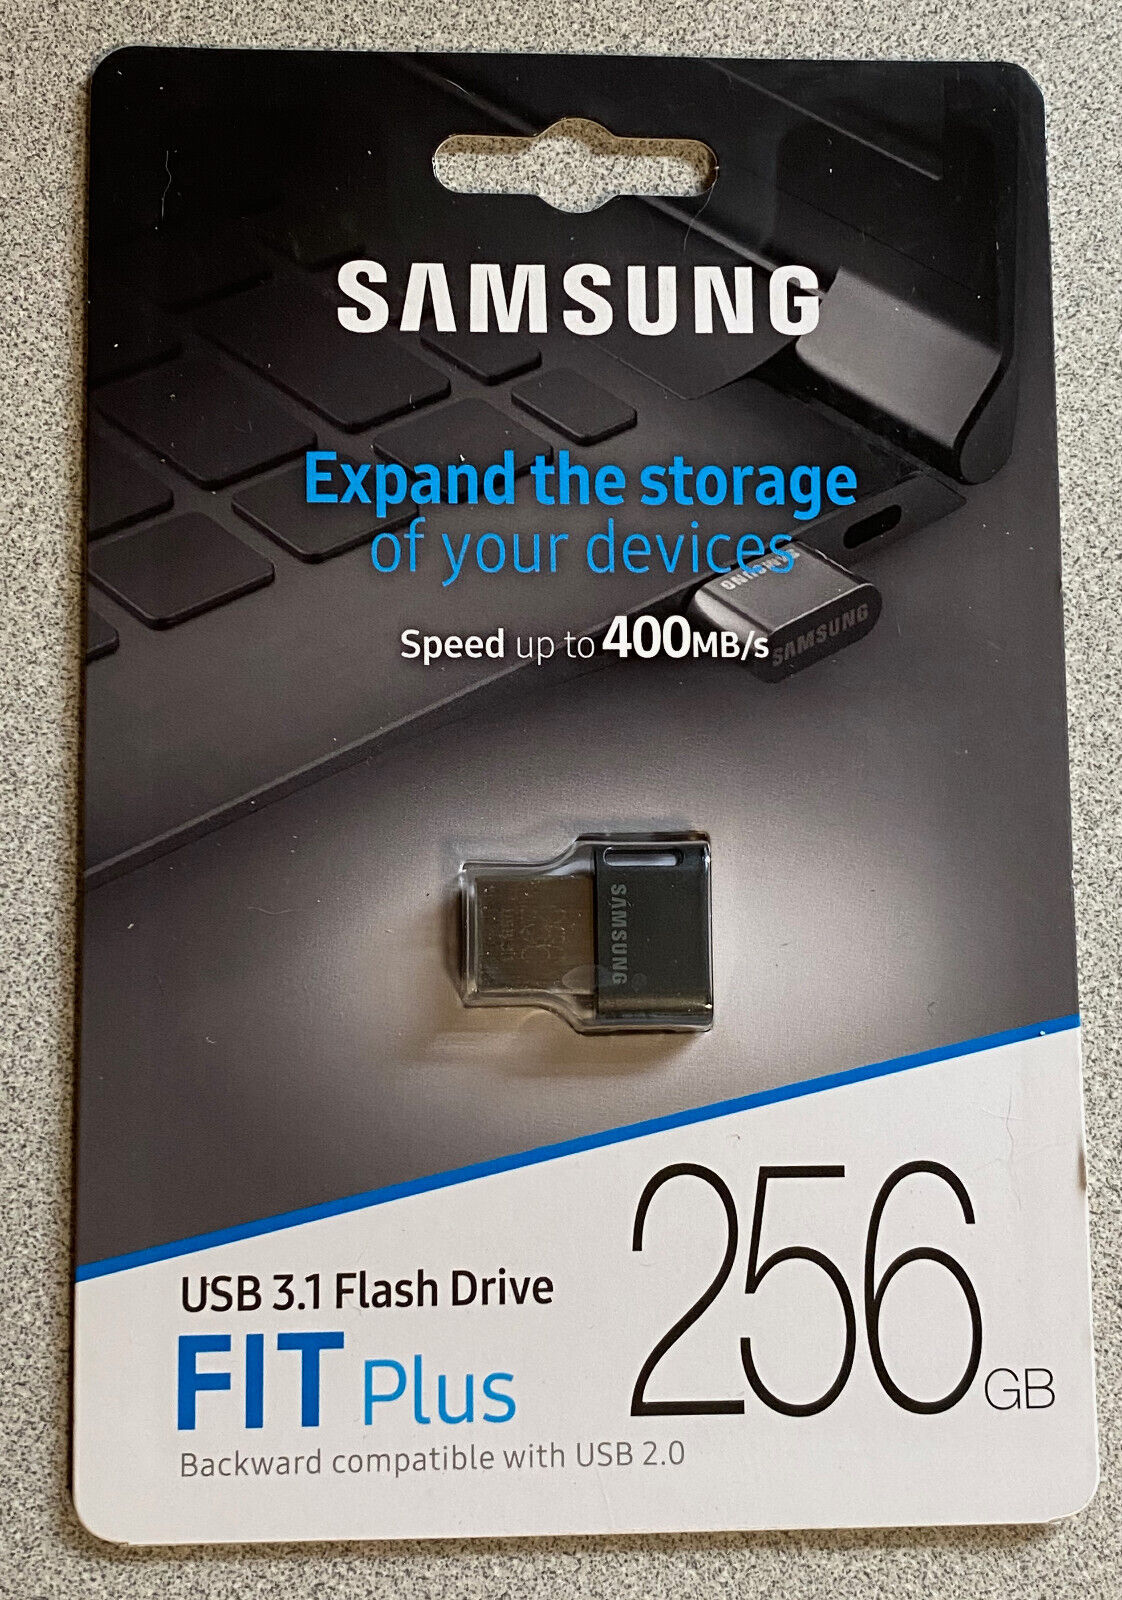 Samsung 256GB USB Fit Plus USB 3.1 Flash Drive Brand New MUF-256AB 887276265940